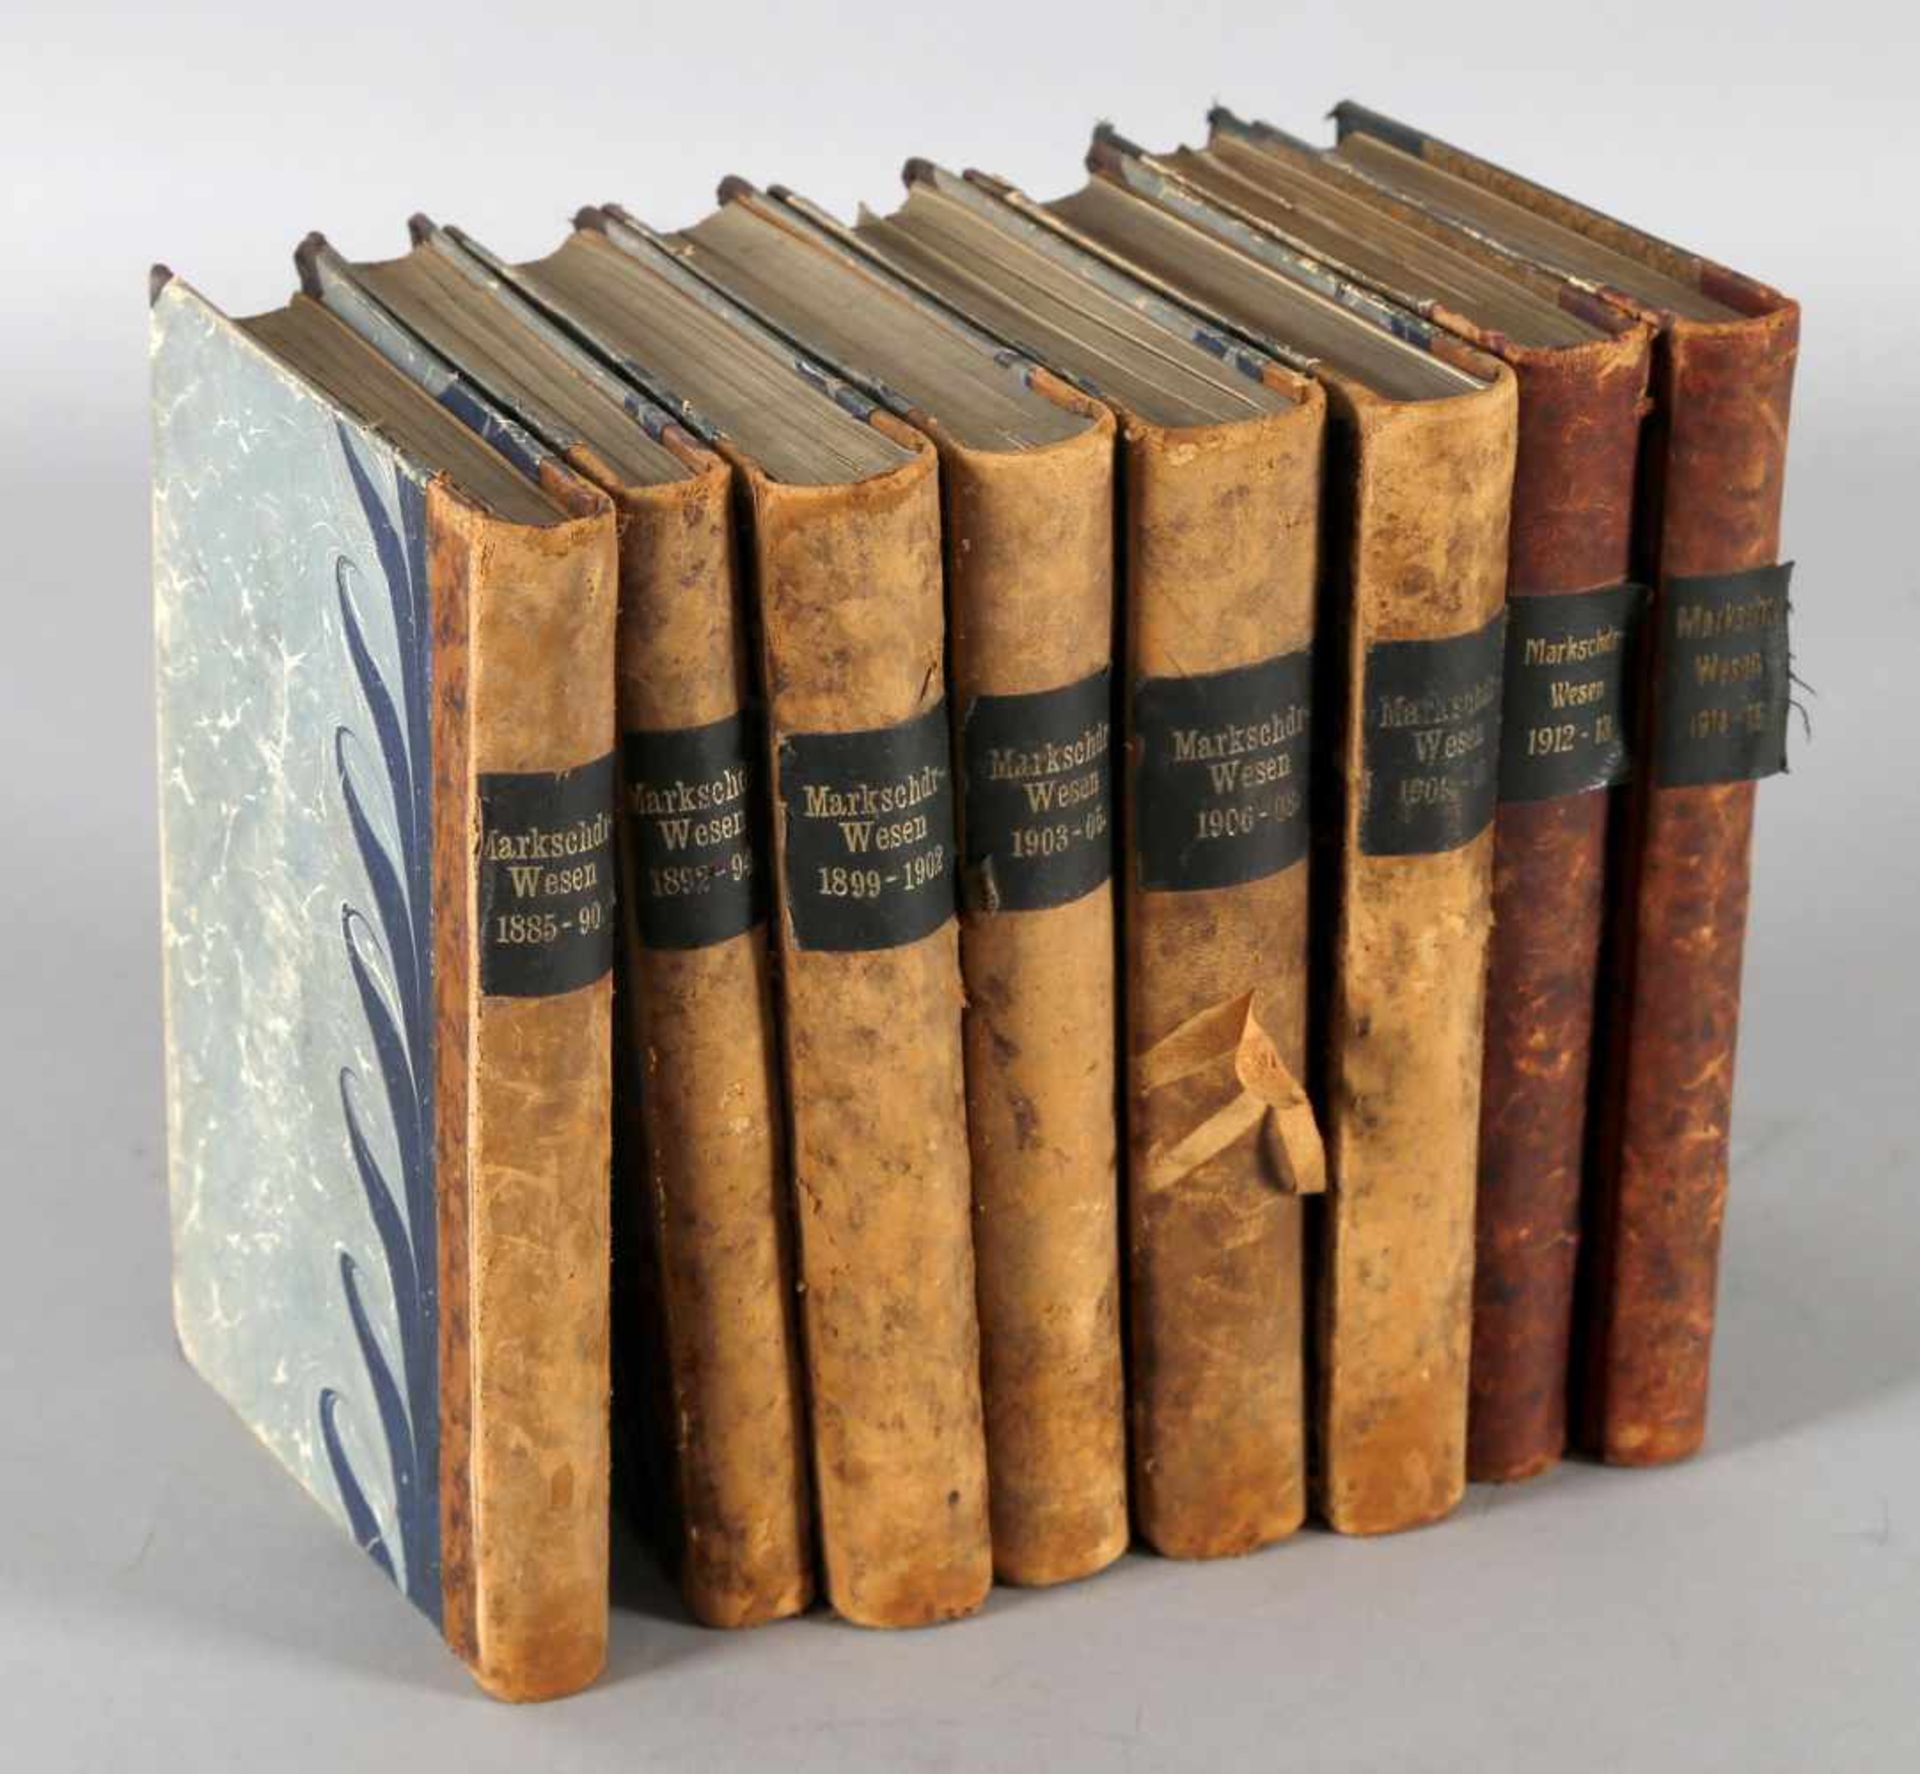 Mittheilungen aus dem Markscheiderwesen 1885-1915 (1895-1898 fehlend), 8 Bände